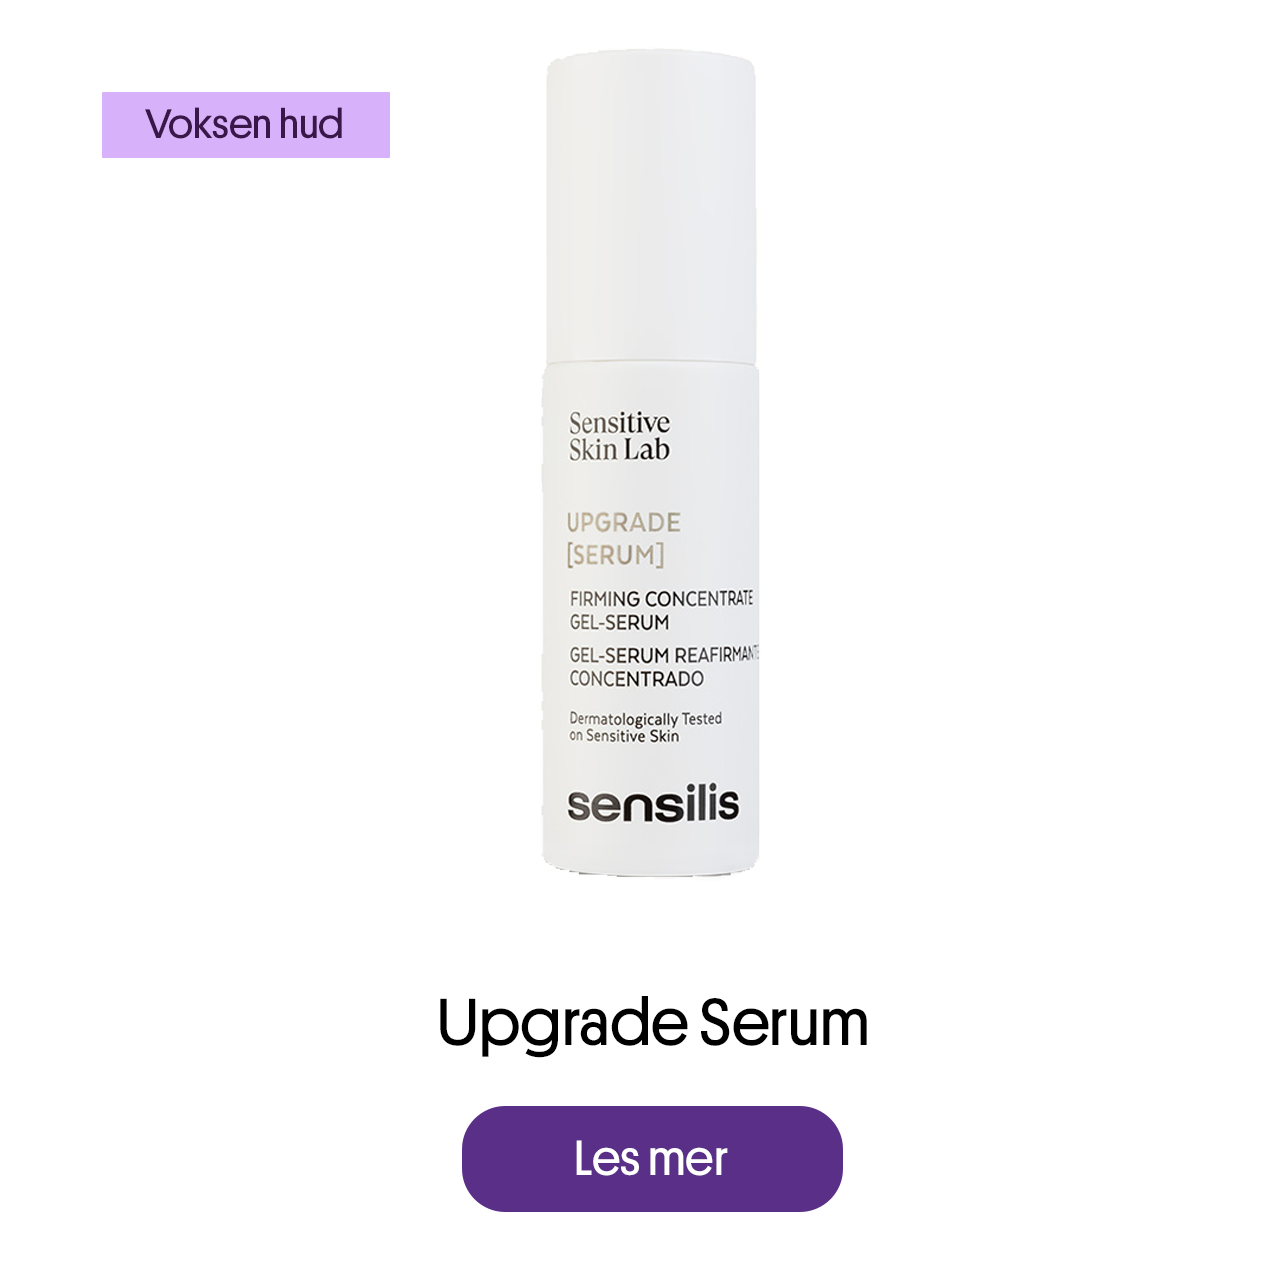 Upgrade Serum for voksen hud